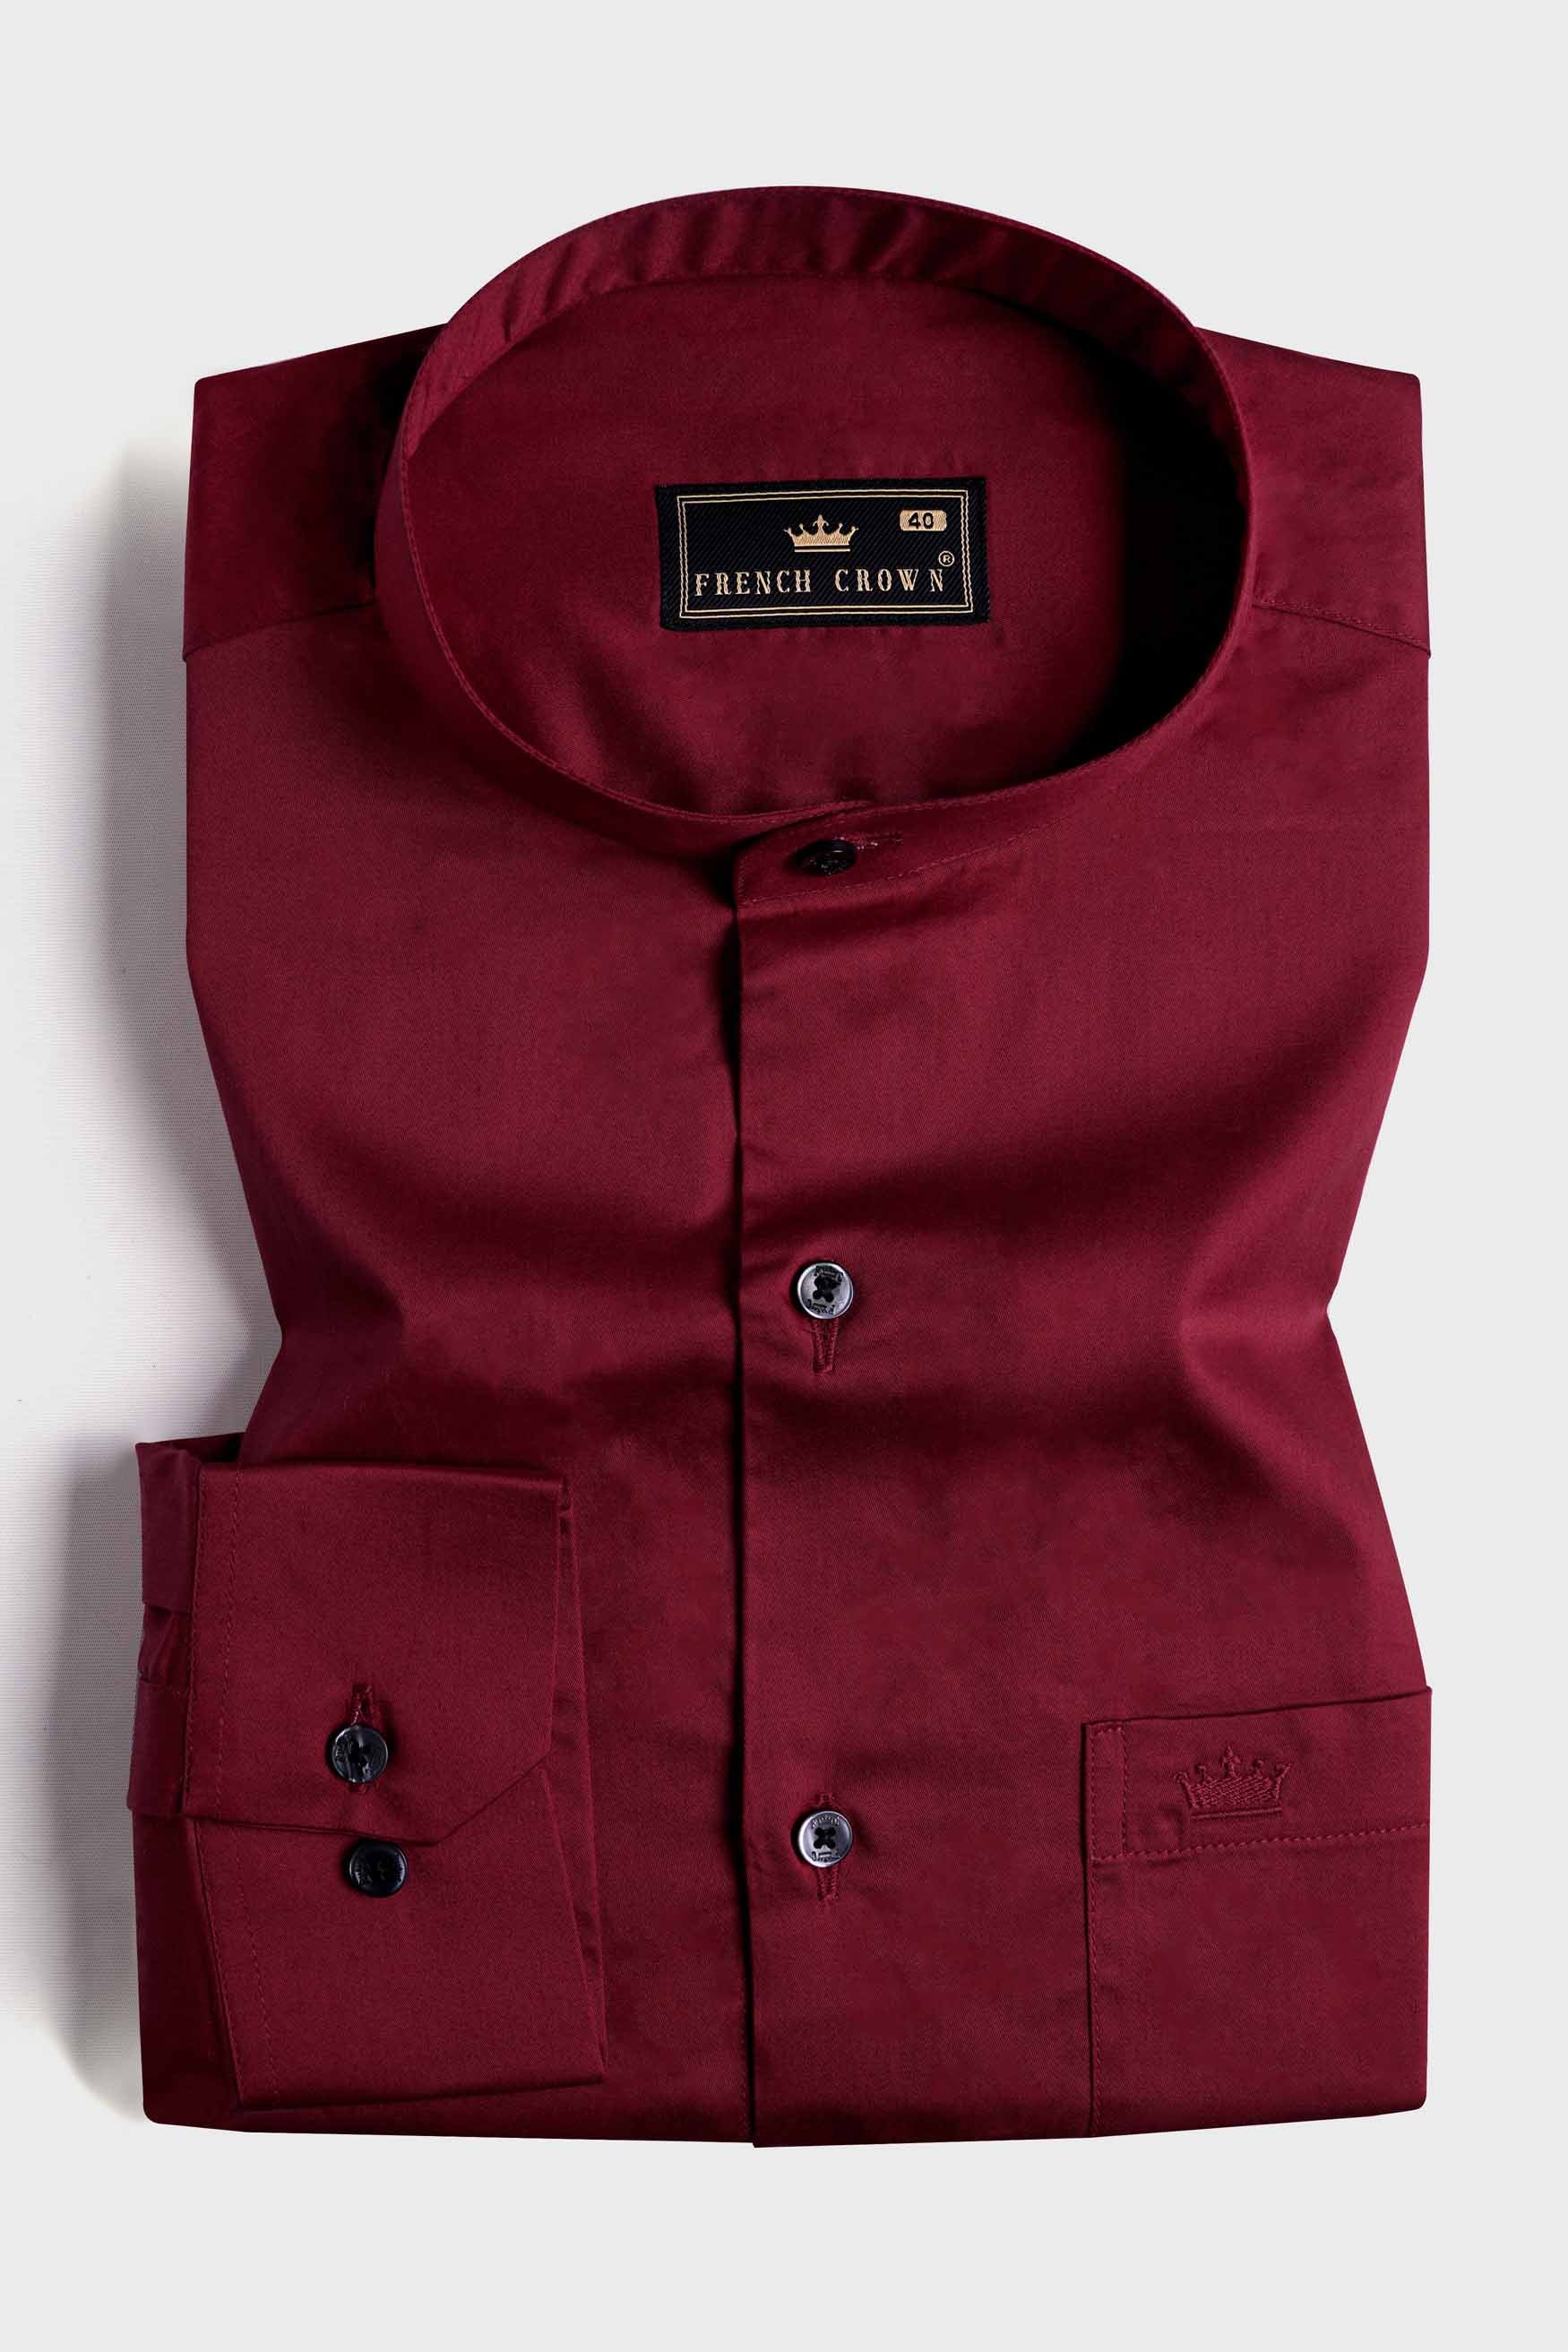 Bordeaux Red Subtle Sheen Super Soft Premium Cotton Mandarin Shirt